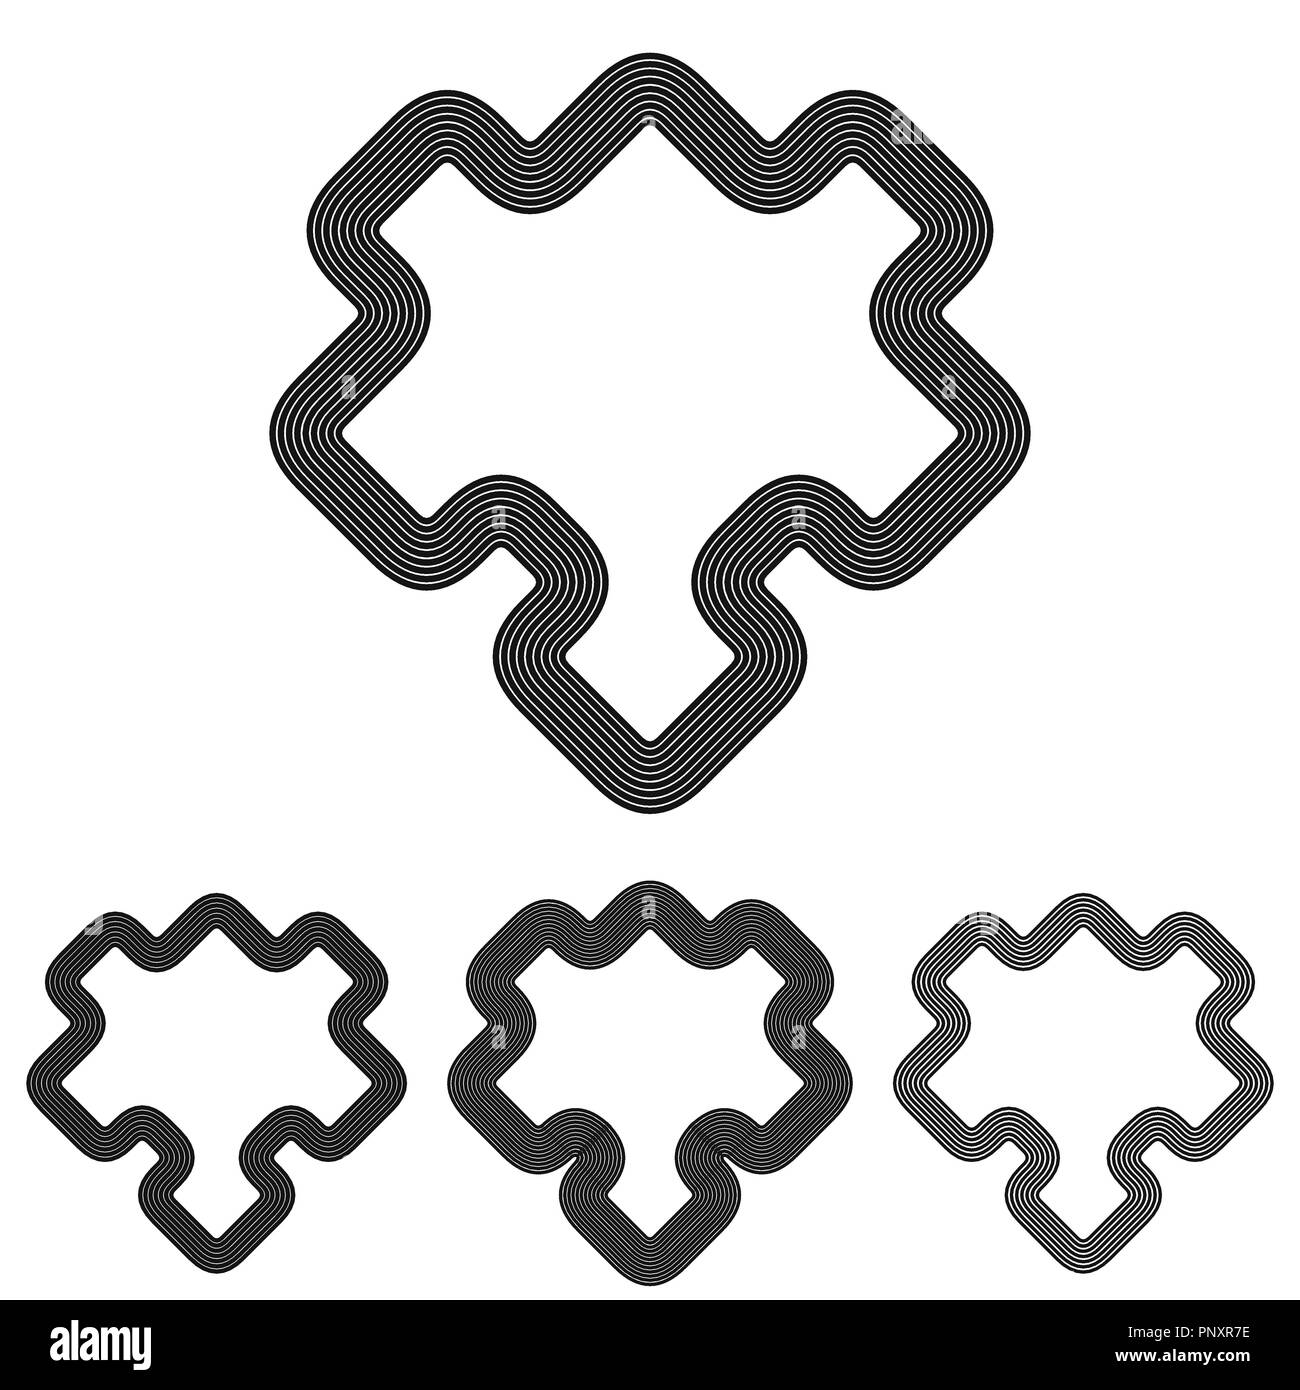 Jeu de puzzle en ligne conception de logo Image Vectorielle Stock - Alamy